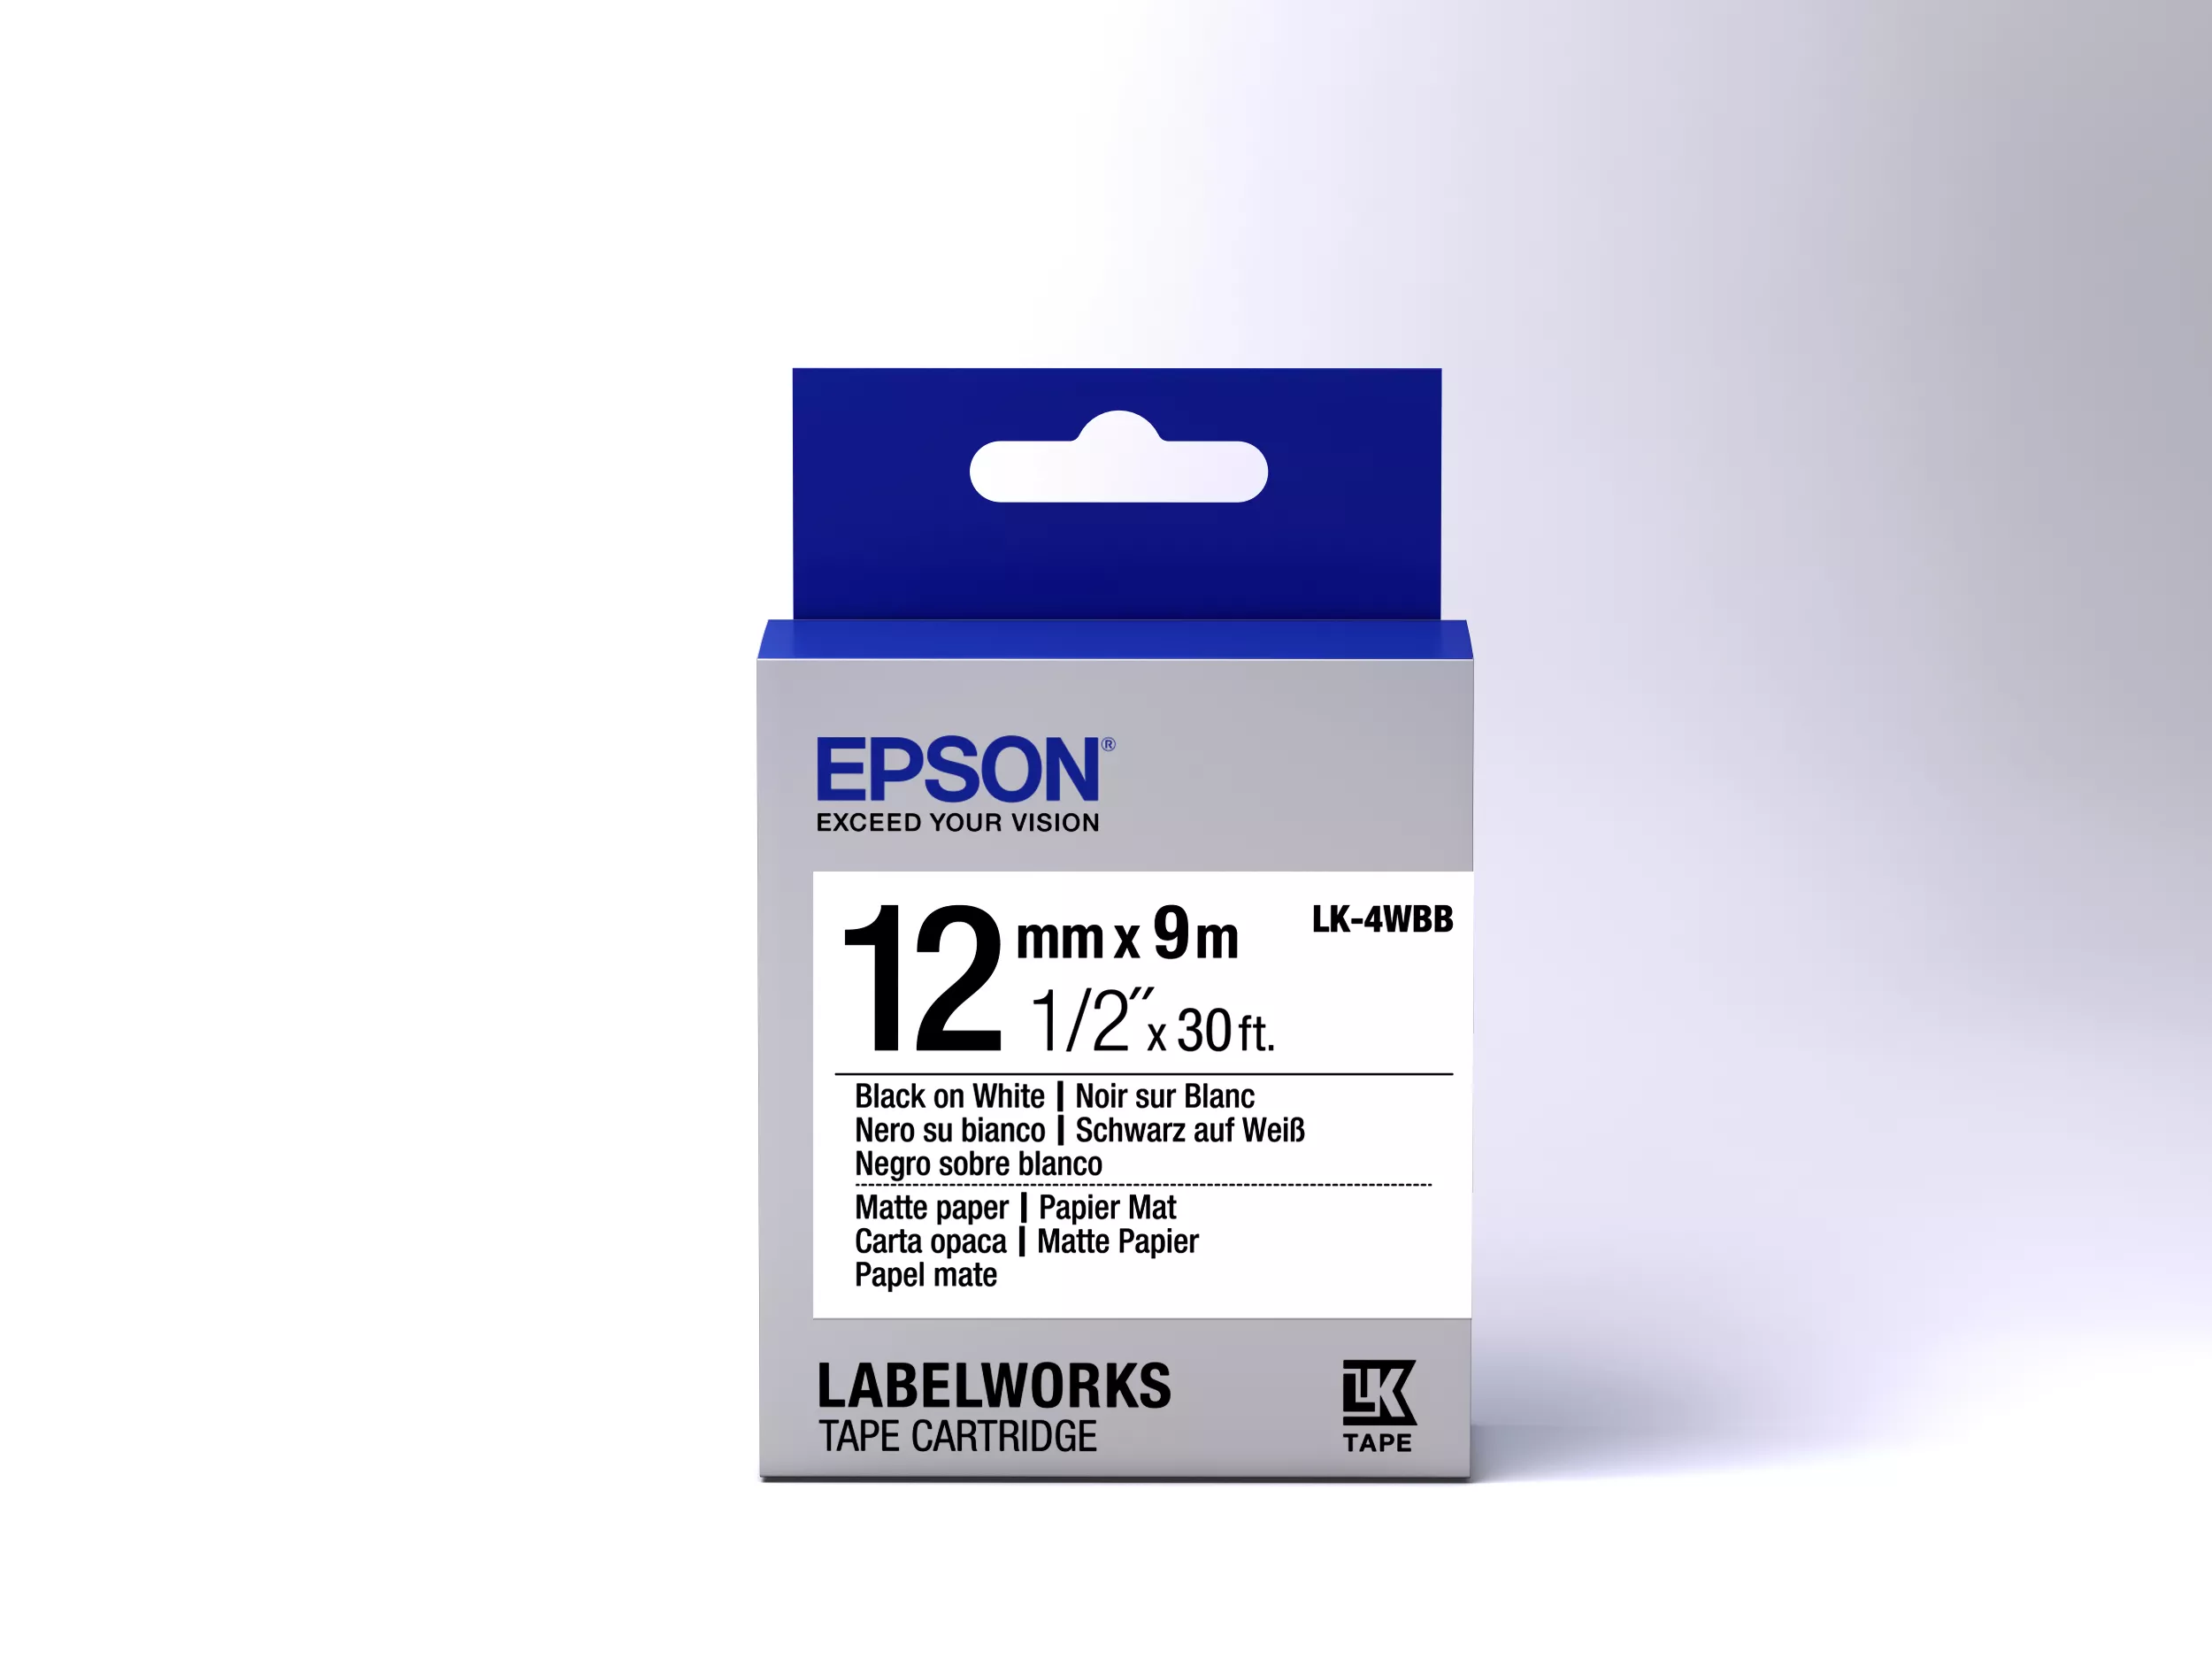 Vente Epson LK-4WBB - Papier Mat - Noir sur Epson au meilleur prix - visuel 2